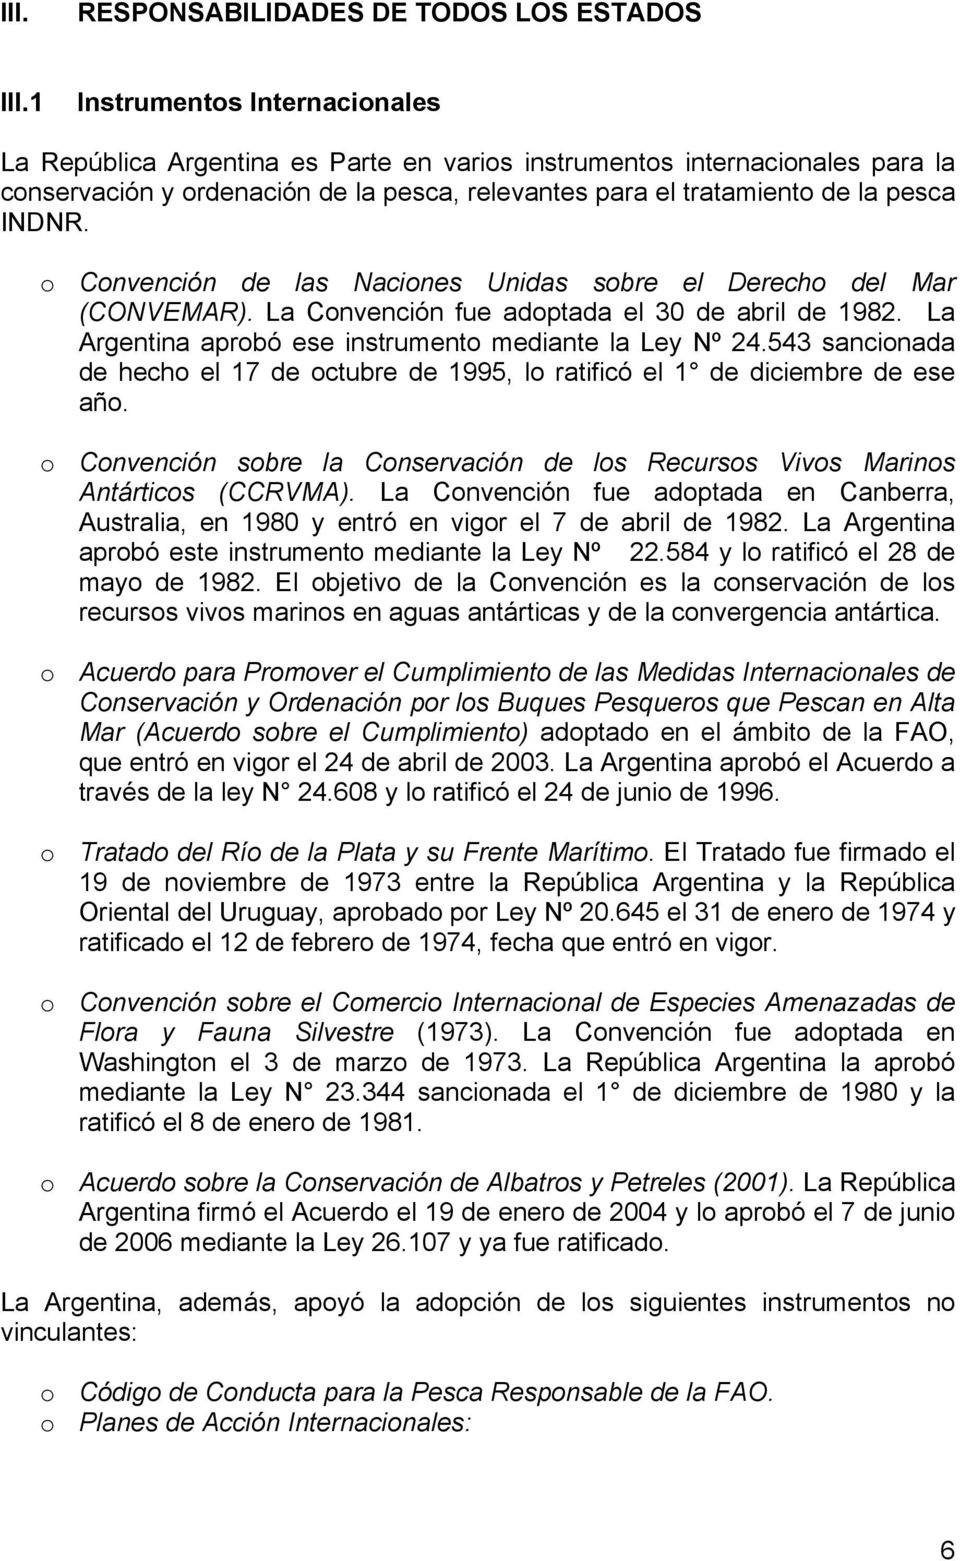 o Convención de las Naciones Unidas sobre el Derecho del Mar (CONVEMAR). La Convención fue adoptada el 30 de abril de 1982. La Argentina aprobó ese instrumento mediante la Ley Nº 24.